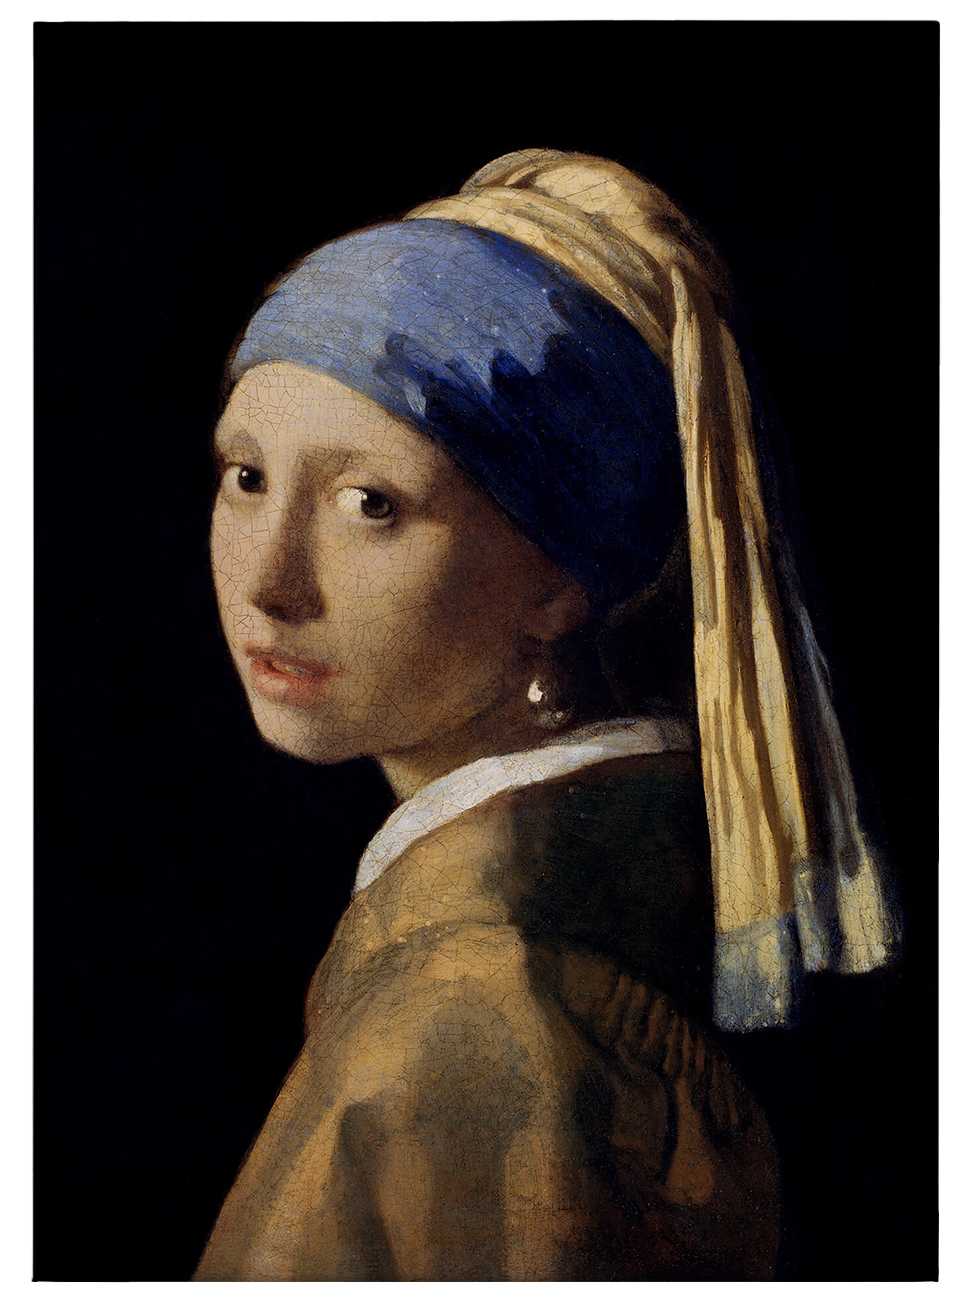             Tableau sur toile "La jeune fille à l'oreille de perle" de Dürer - 0,50 m x 0,70 m
        